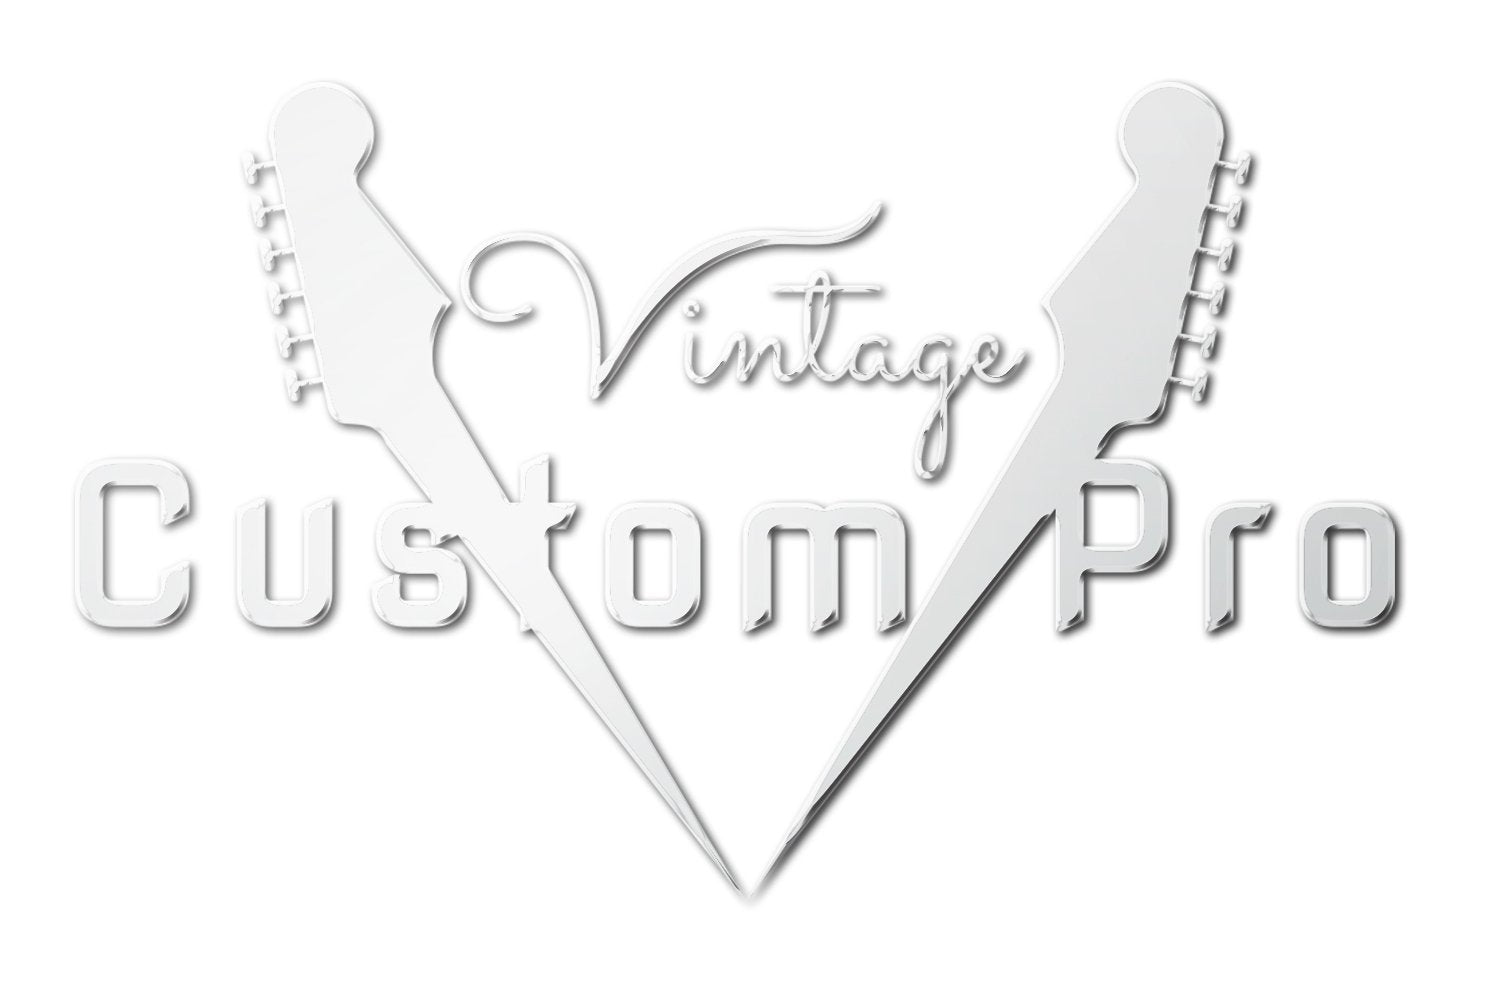 Vintage* V72FTB Electric Guitar, Electric Guitar for sale at Richards Guitars.